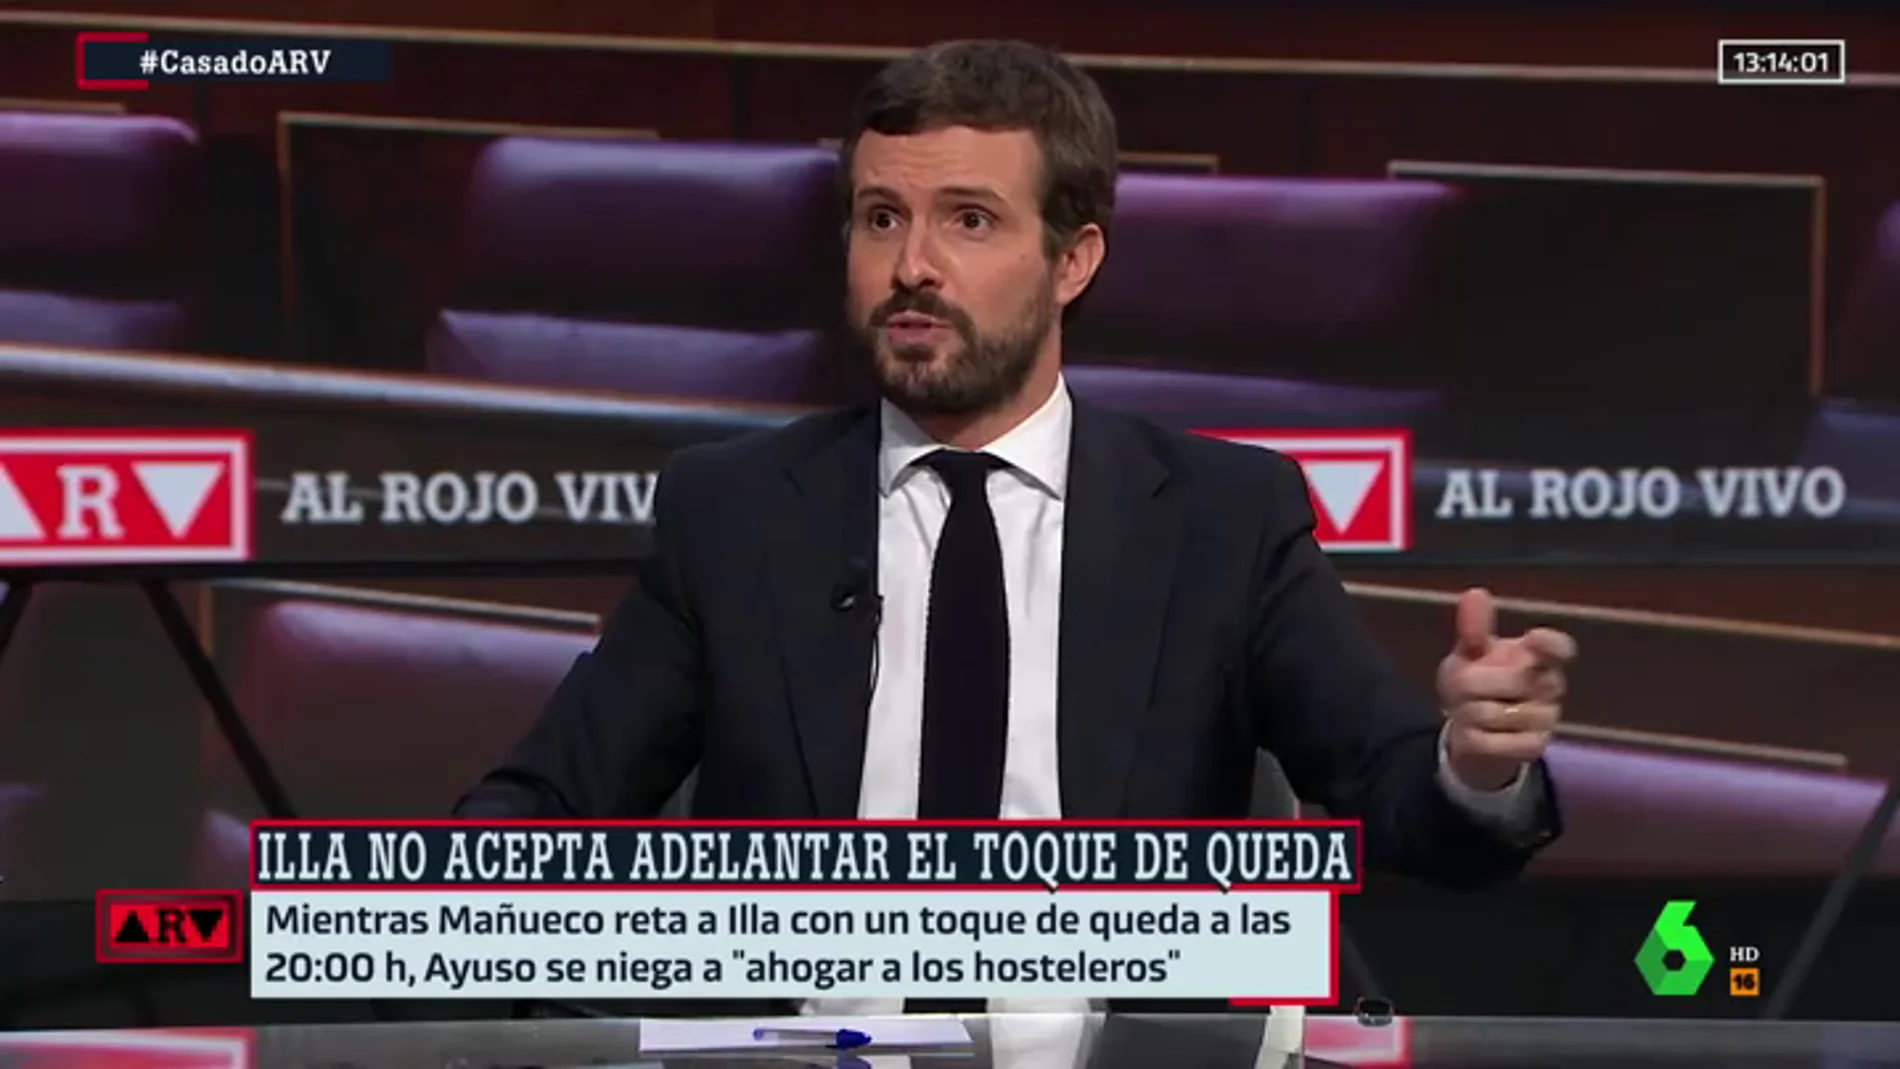 Casado justifica las contradicciones de Ayuso y Mañueco por el confinamiento porque "no es lo mismo Madrid que Castilla y León"